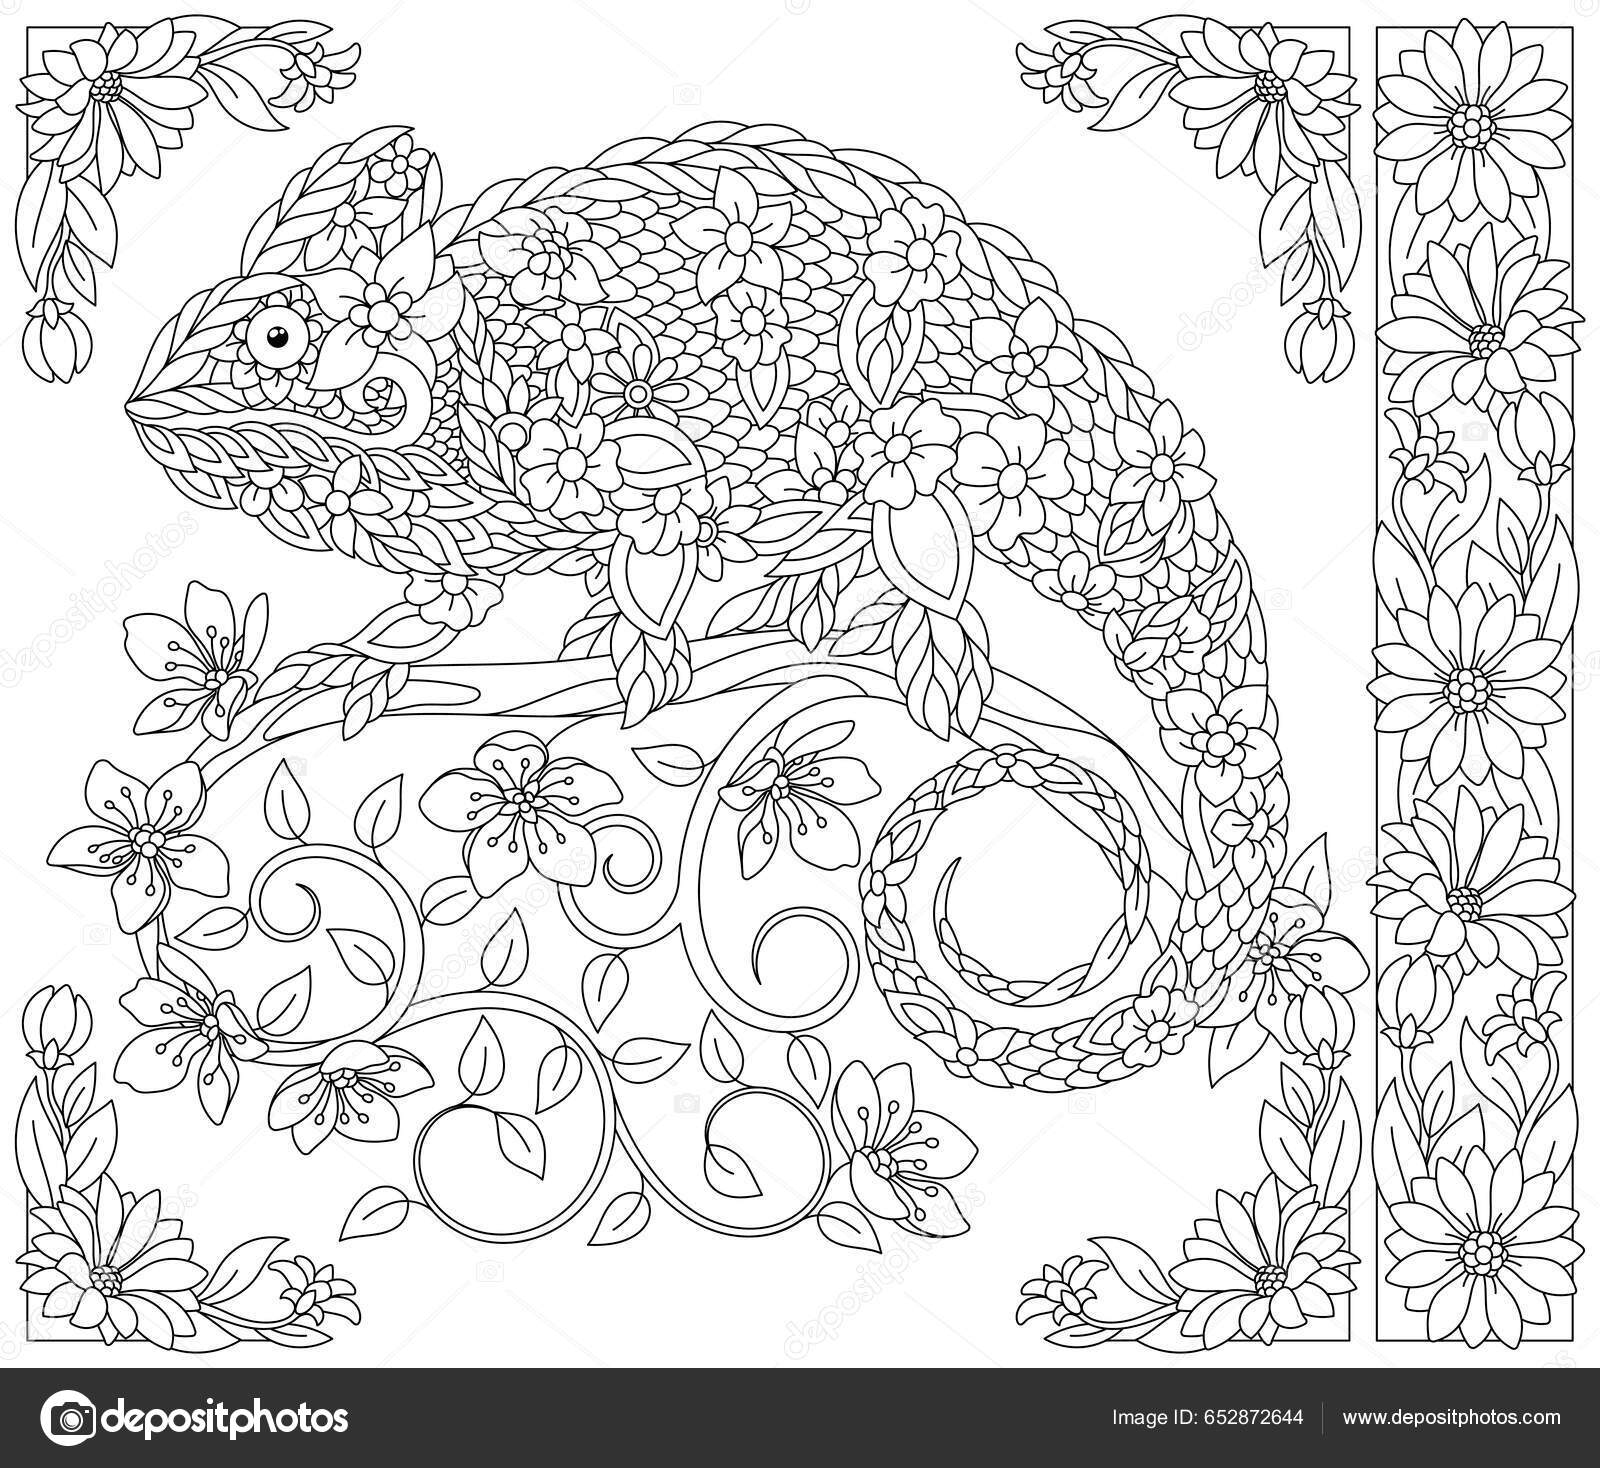  Libro Colorear Adultos Animals: 100 Diseños de Animales Libro  da Colorear para Aliviar el Estrés con leones, dragones, mariposas,  elefantes, búhos,  para Colorear para Adulto (Spanish Edition):  9798717533973: MUNDO, QTA: Libros